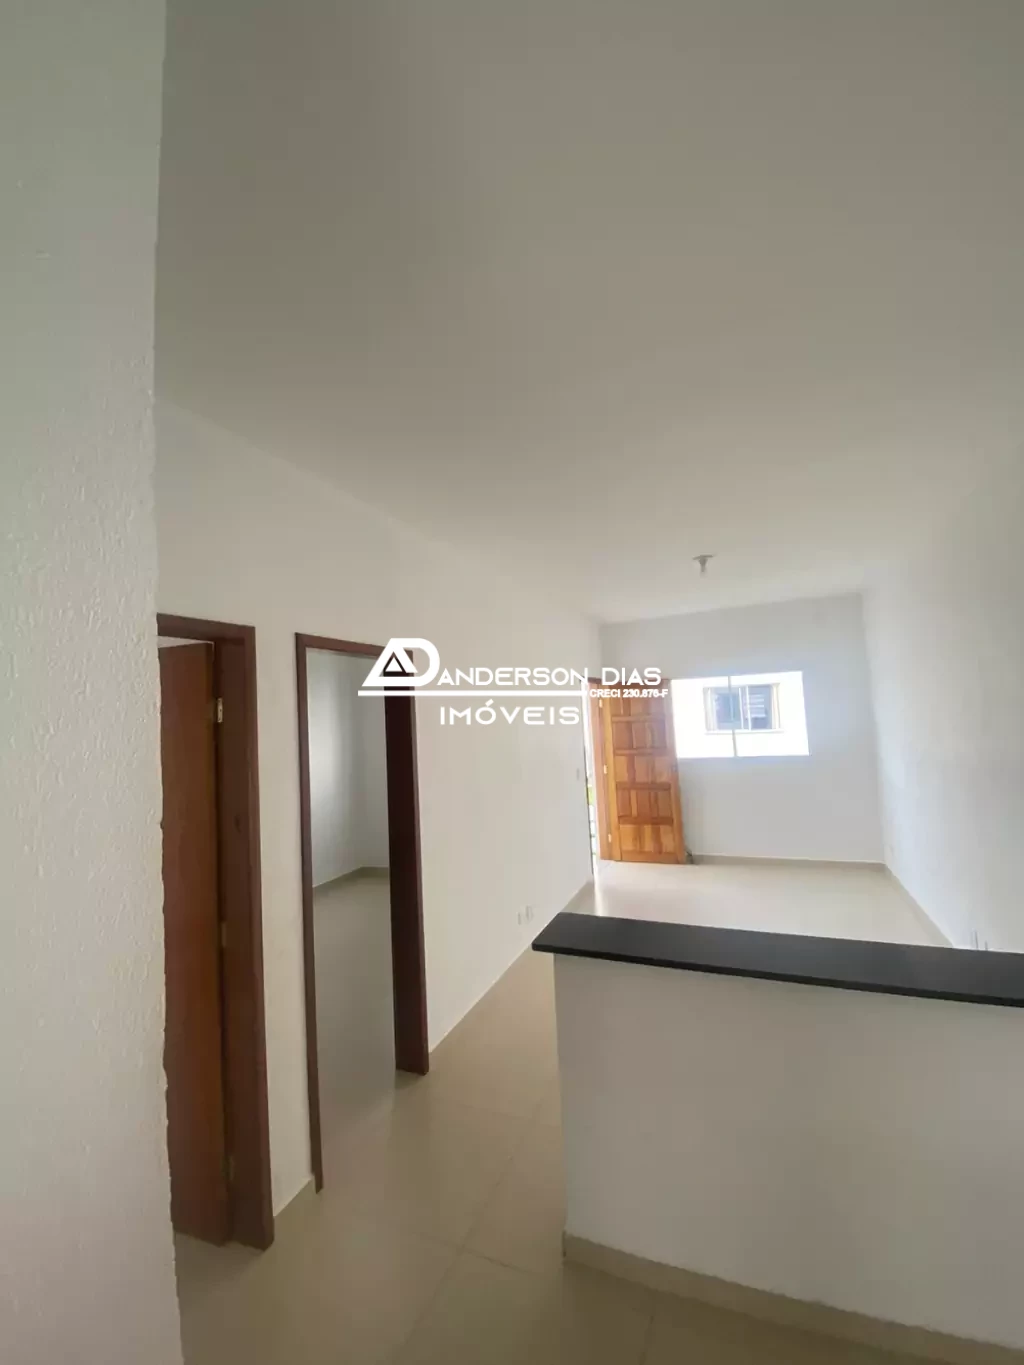 Casa com 2 dormitórios para aluguel definitivo, por R$ 1.900 - Balneário Golfinhos - Caraguatatuba/SP.